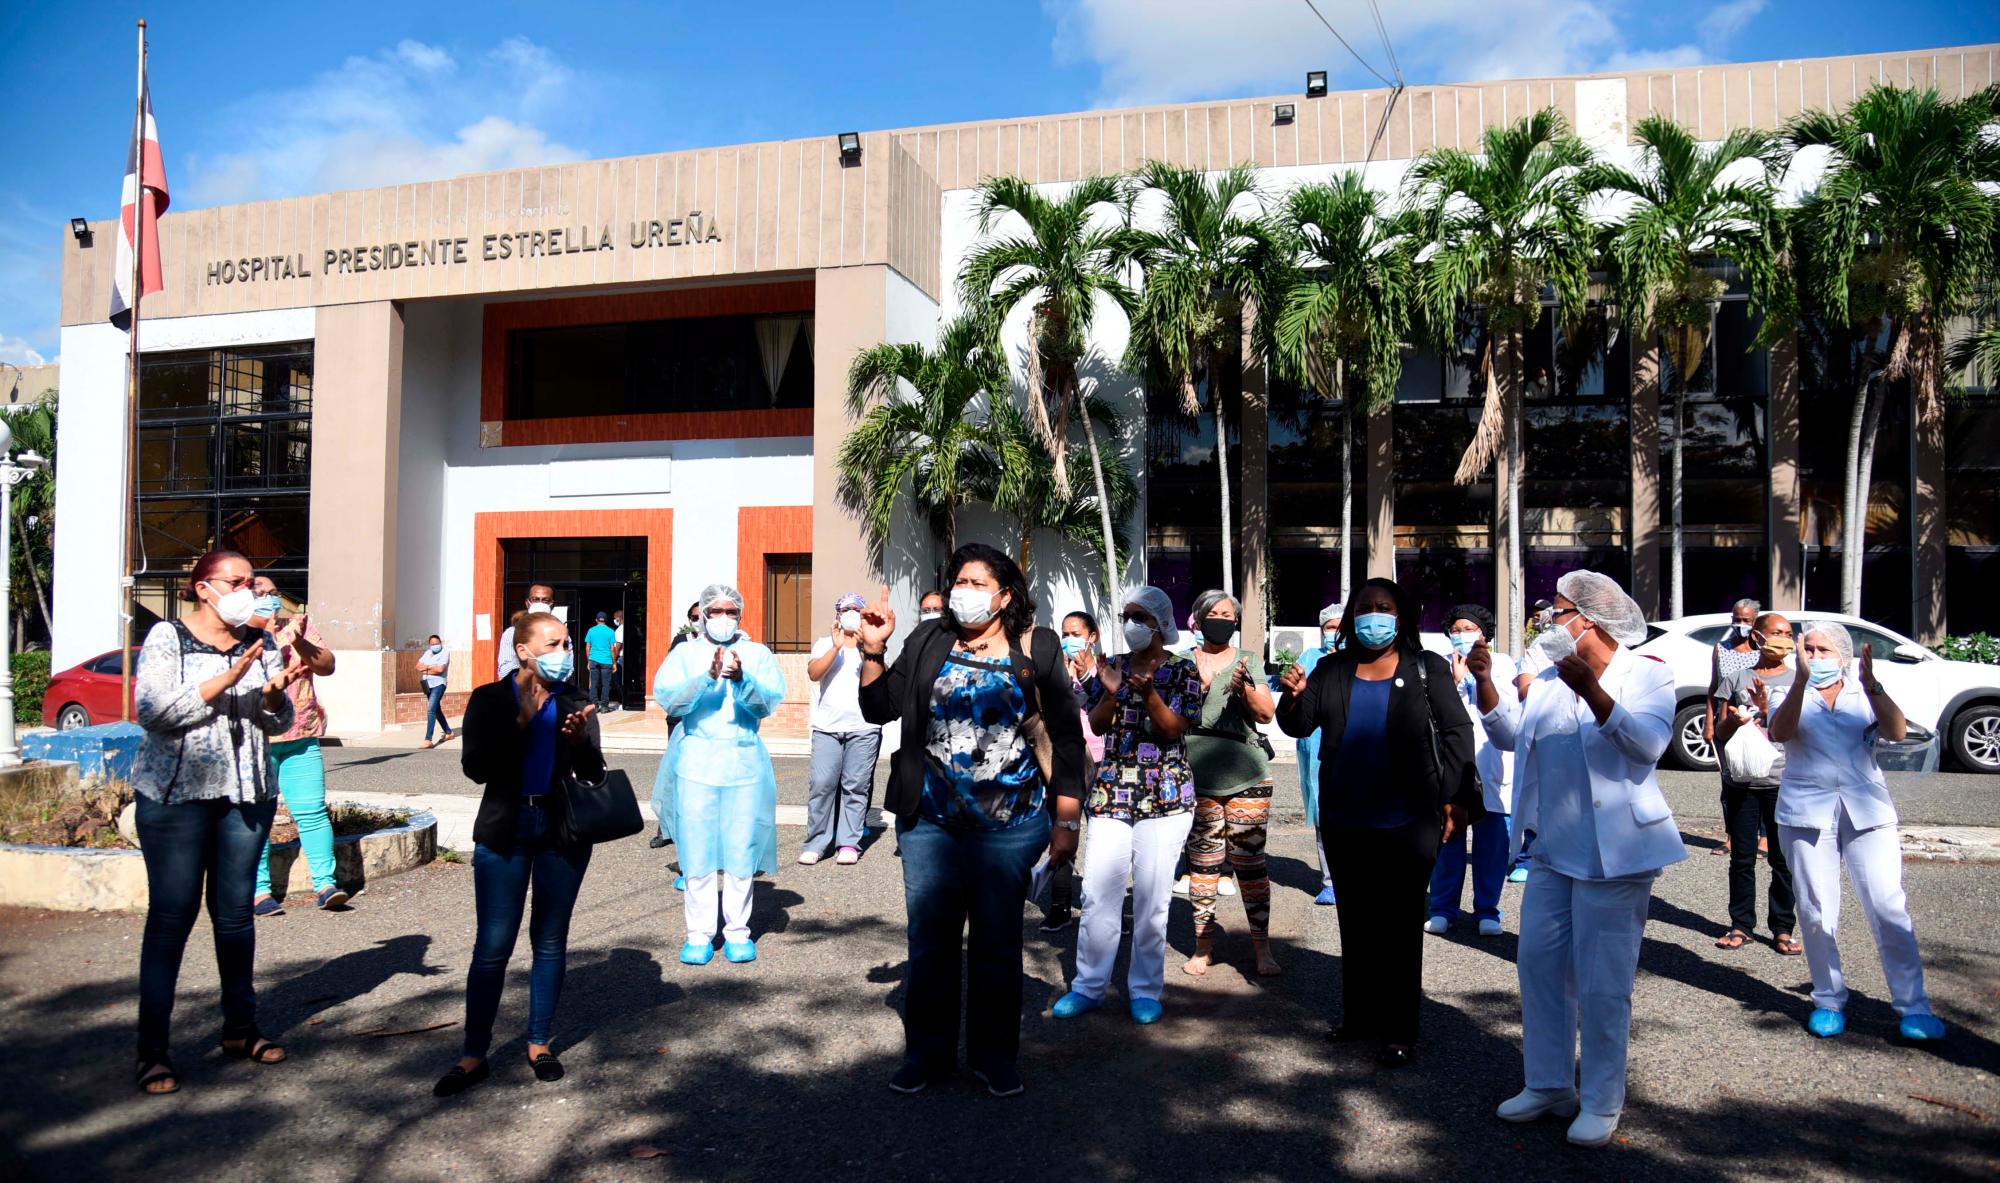 Santiago, República Dominicana: enfermera s de Santiago se oponen a que sea habilitado espacio para pacientes contagiados de Covid-19 en el  hospital Estrella Ureña de Santiago. Jueves 16 de julio de 2020.